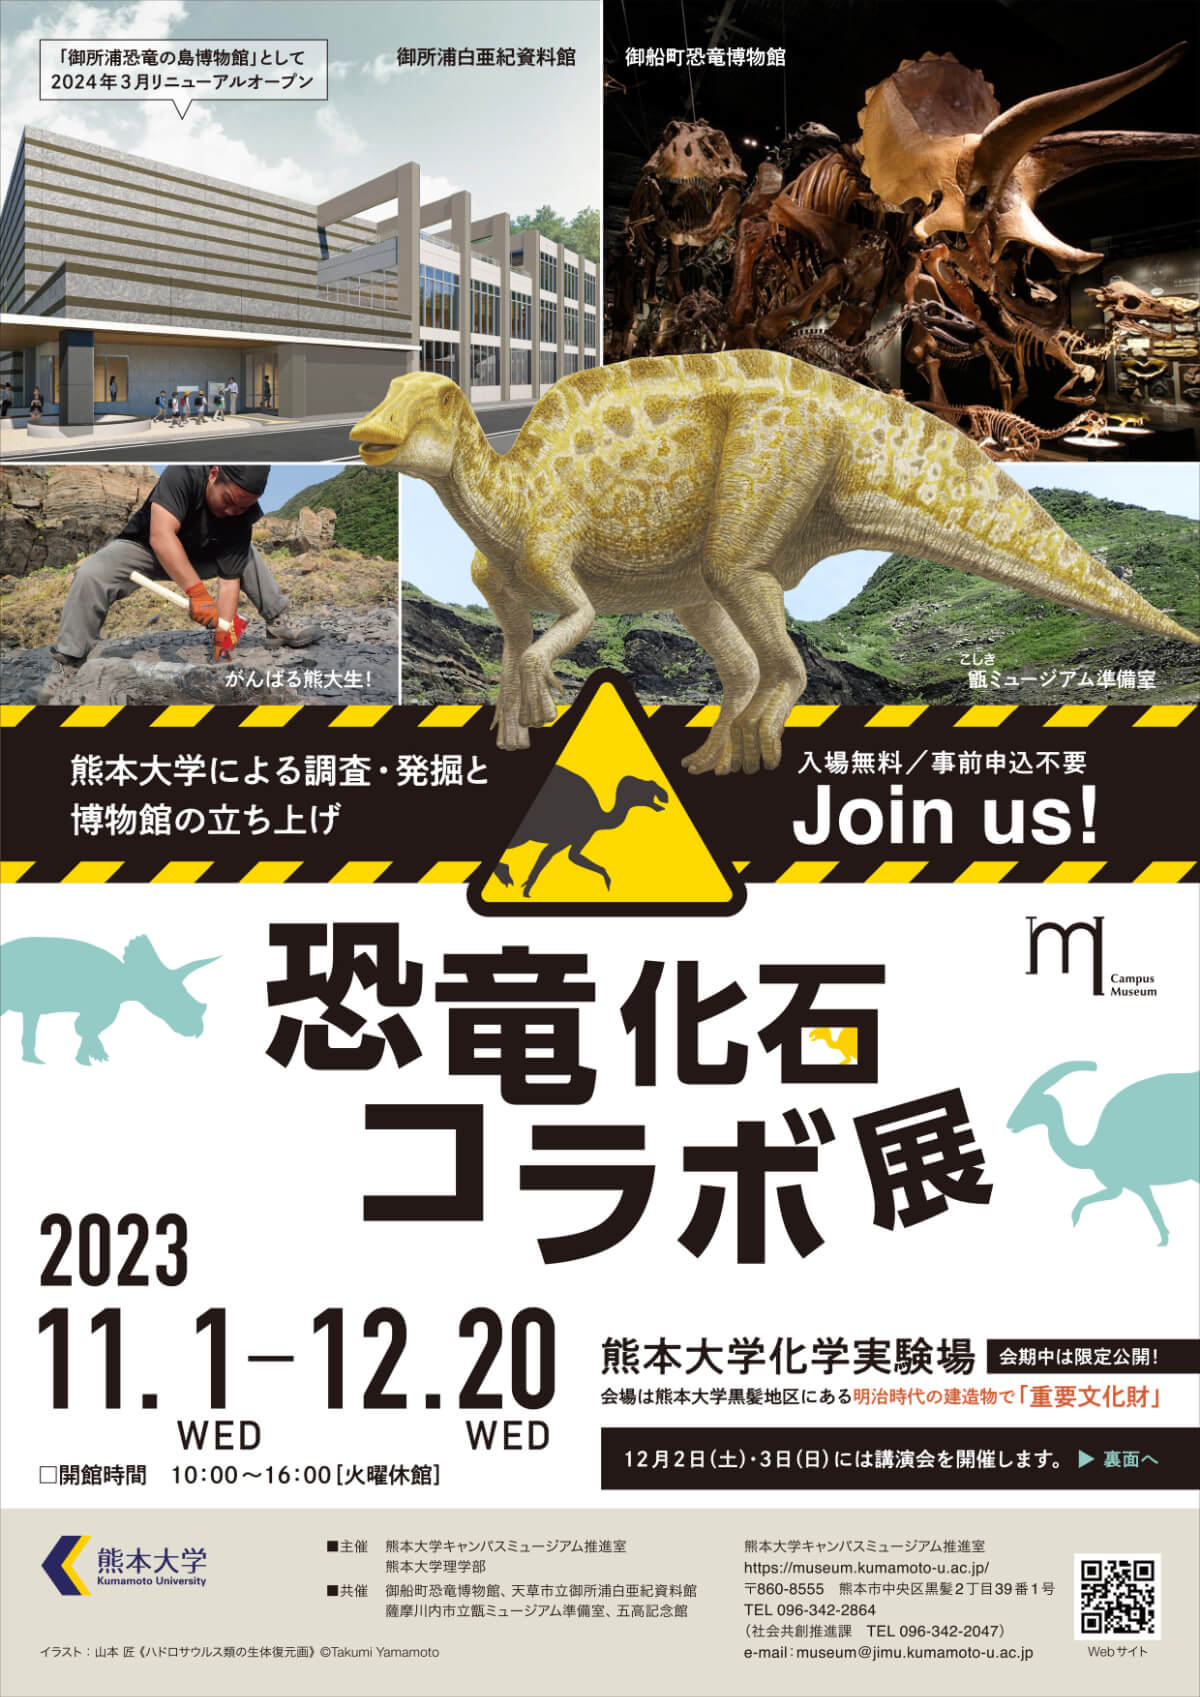 【恐竜化石コラボ展】@熊本大学